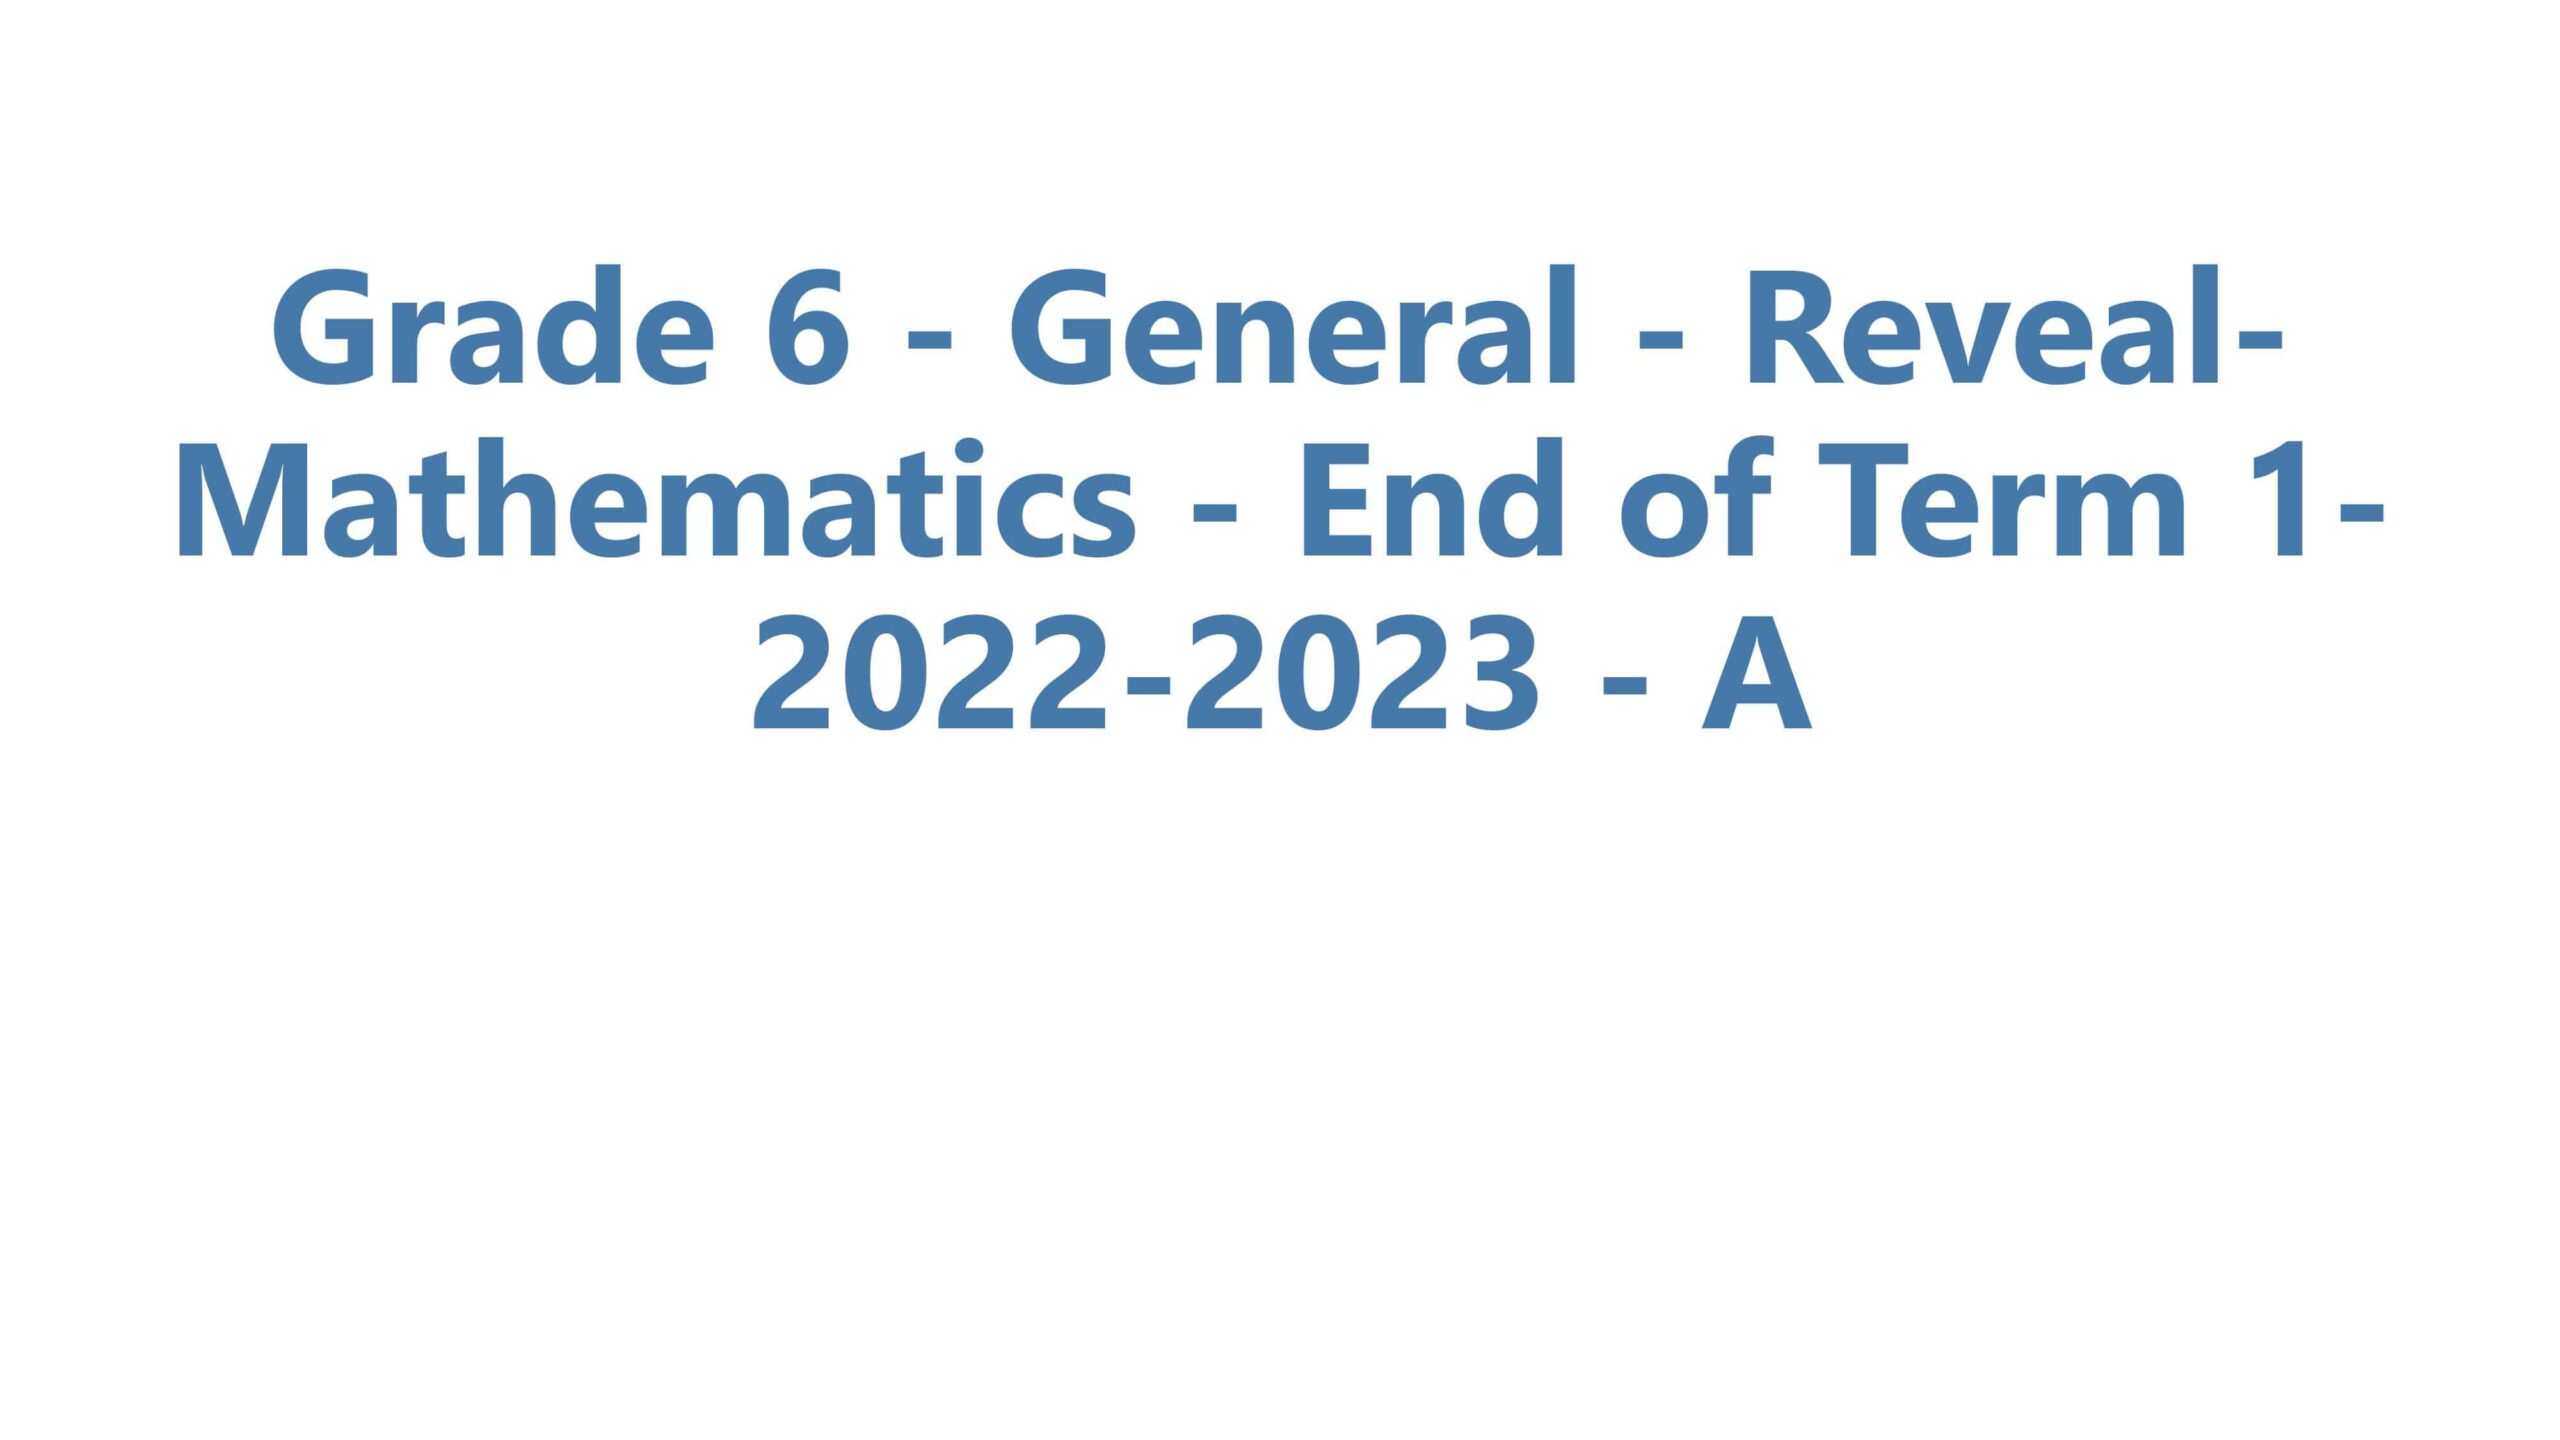 حل امتحان نهاية الفصل الدراسي الأول الرياضيات المتكاملة Reveal الصف السادس 2022-2023